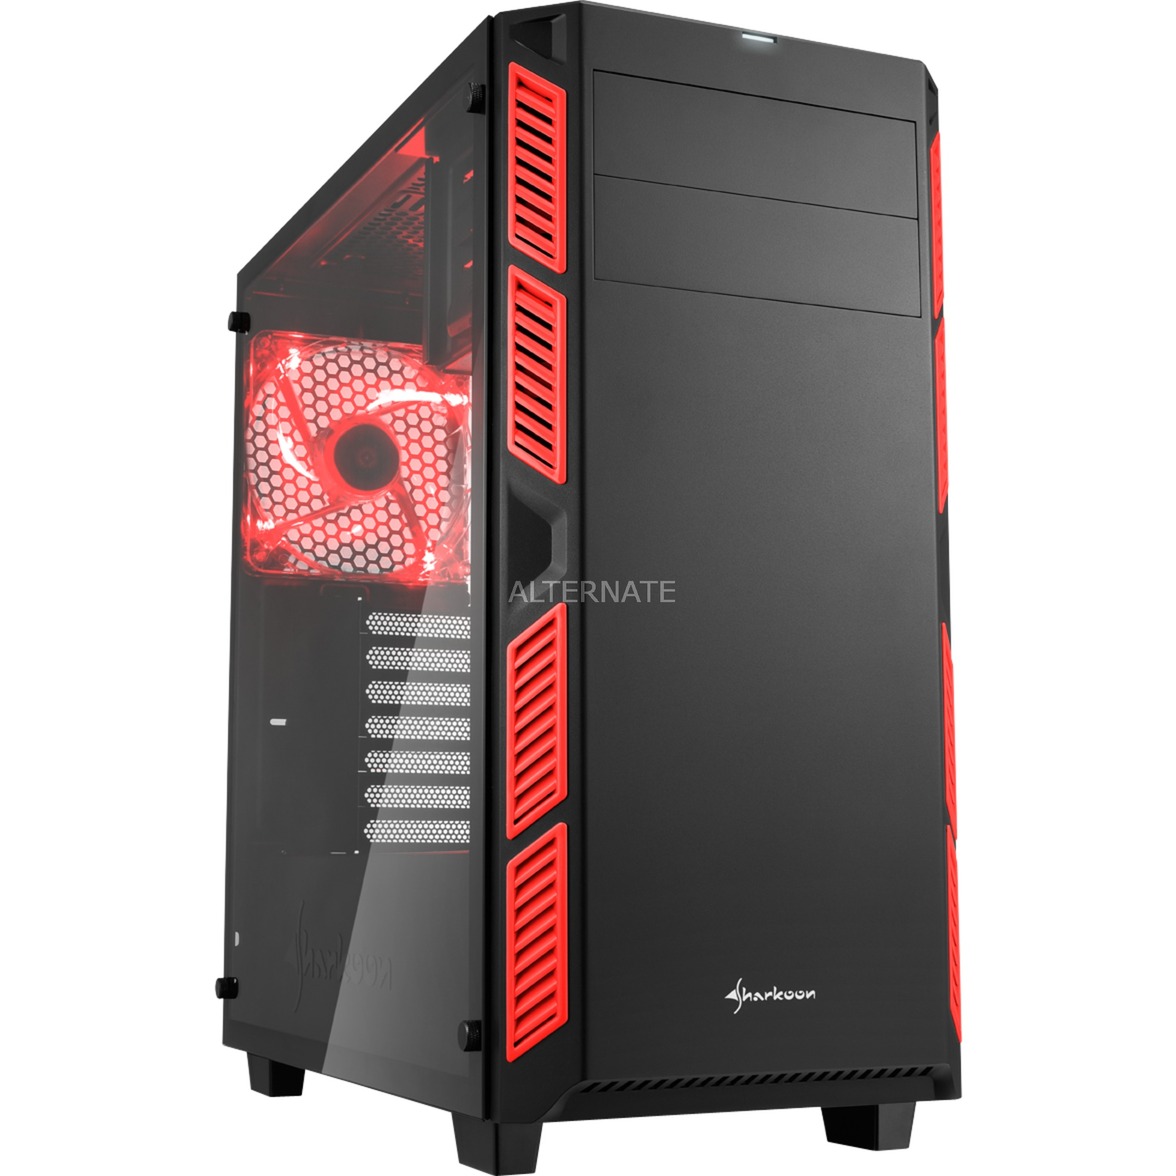 Компьютер red. Компьютерный корпус Sharkoon dg7000 Black/Red. Sharkoon dg7000 корпус. Midi Tower корпус красный. Красно белый корпус для ПК.